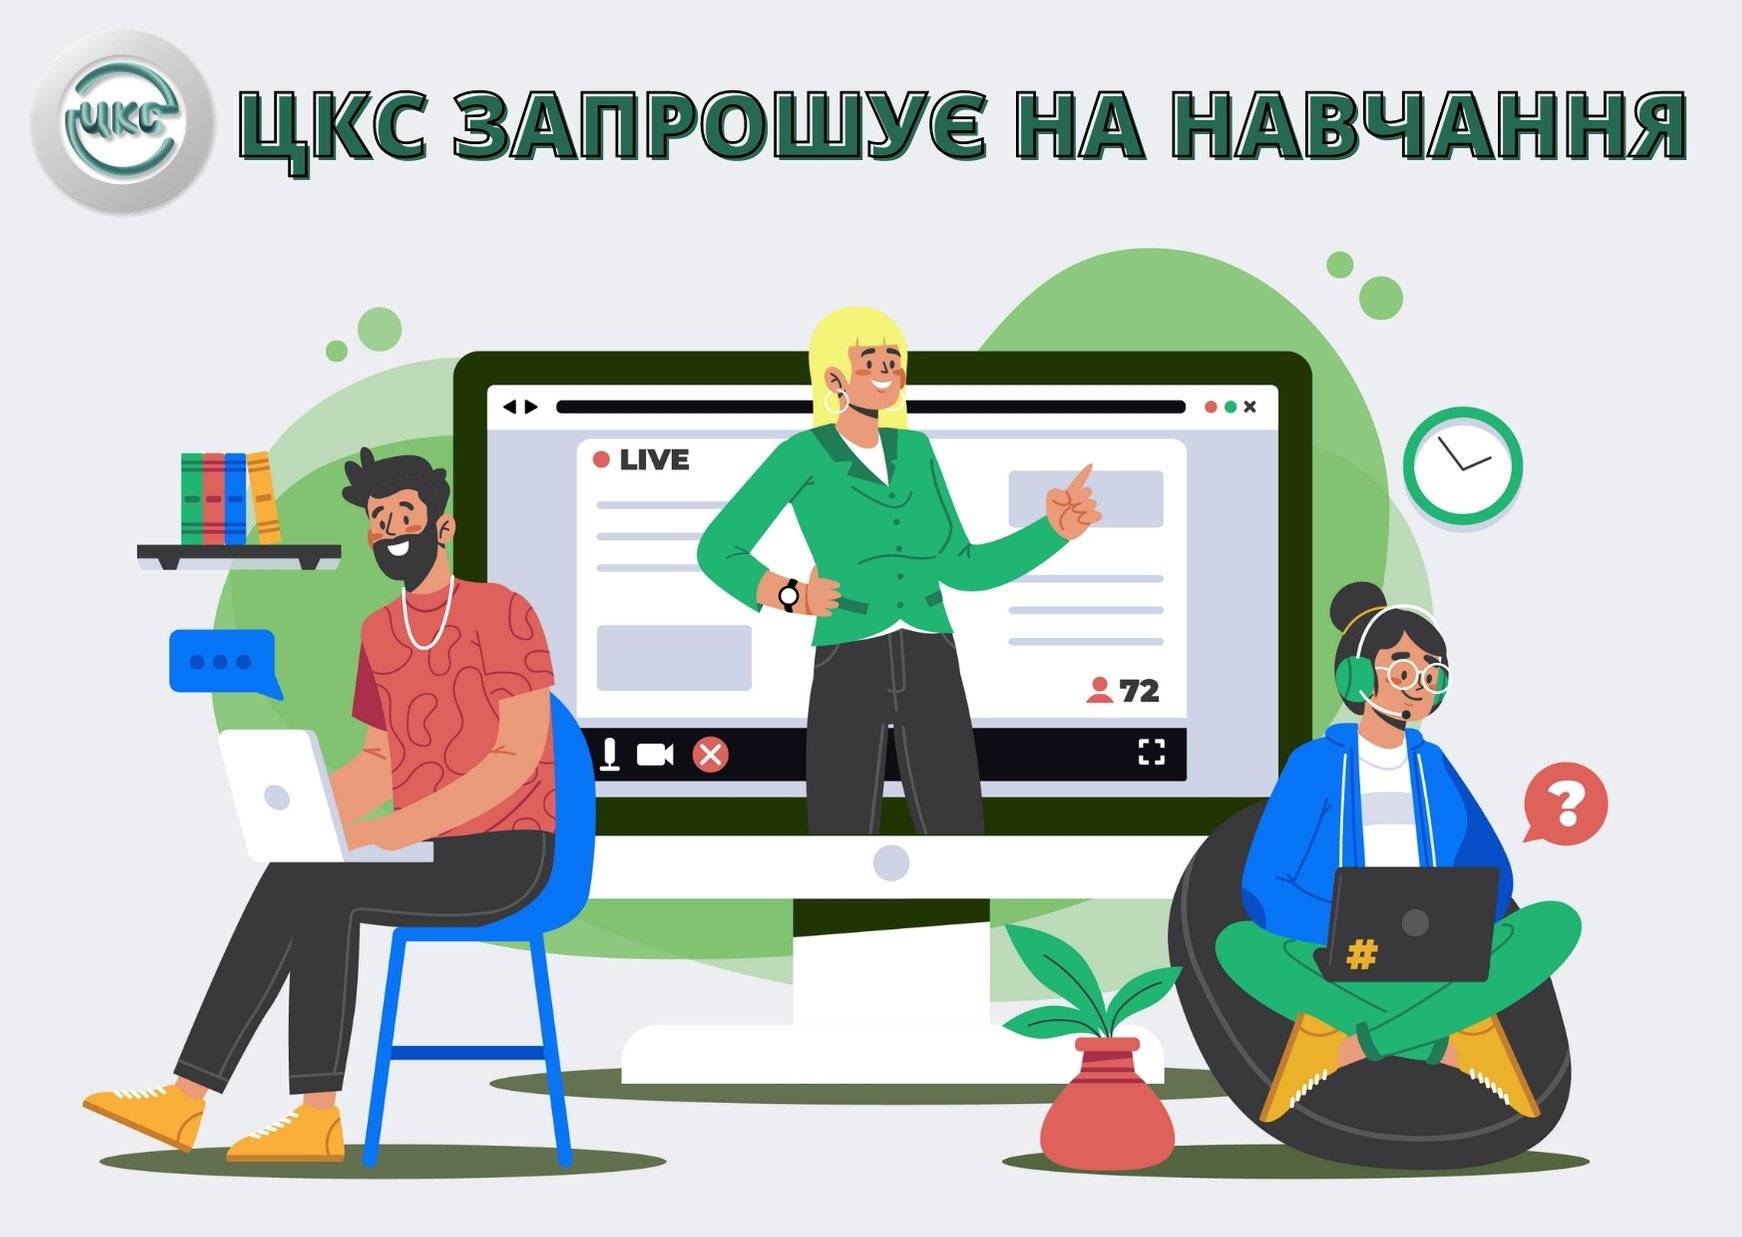 Киевский Центр коммунального сервиса приглашает на обучение пользованию муниципальными онлайн-сервисами